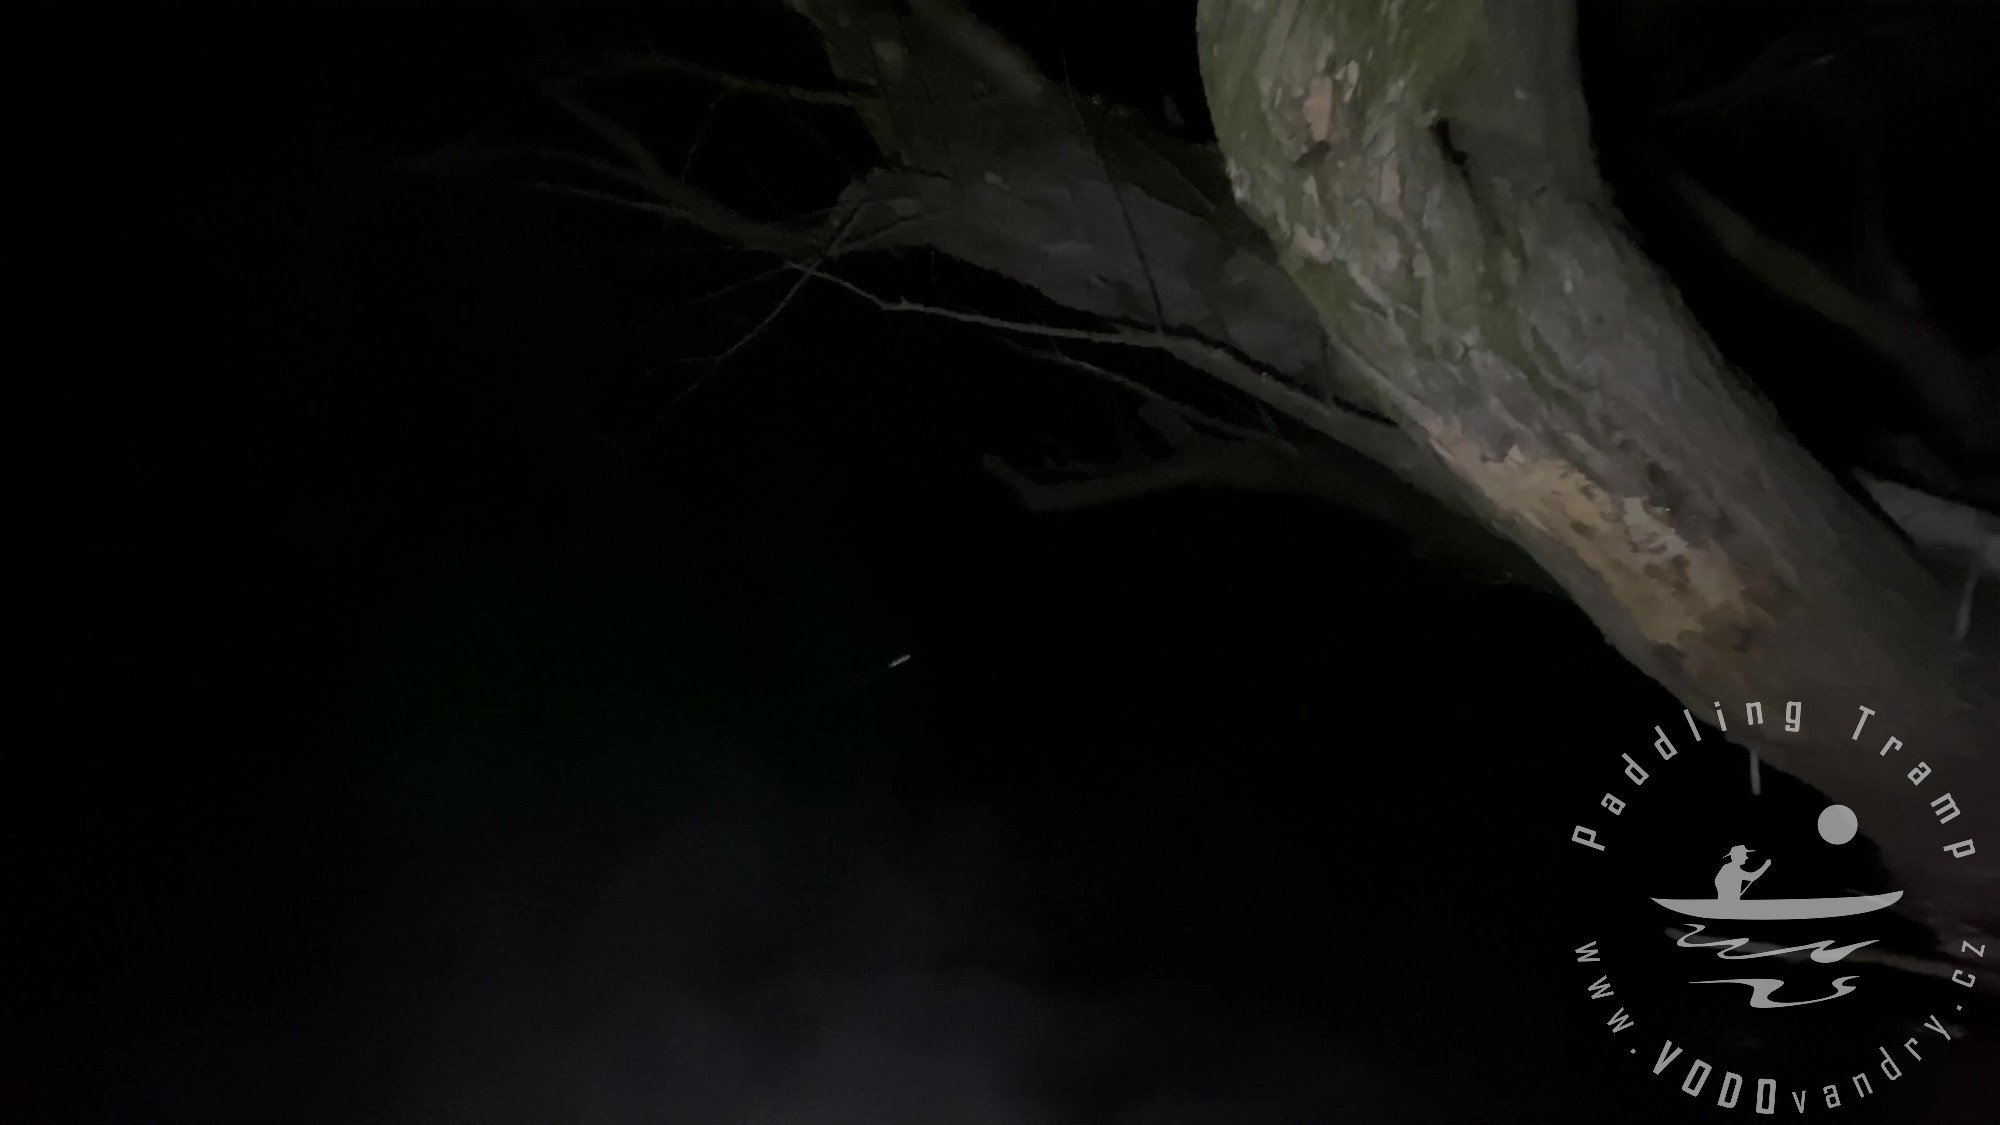 Jak jsem se cvakl na nočním sjezdu řeky Opavy | Noční pádlování | Kánoe Gumotex Pálava | Bushcraft